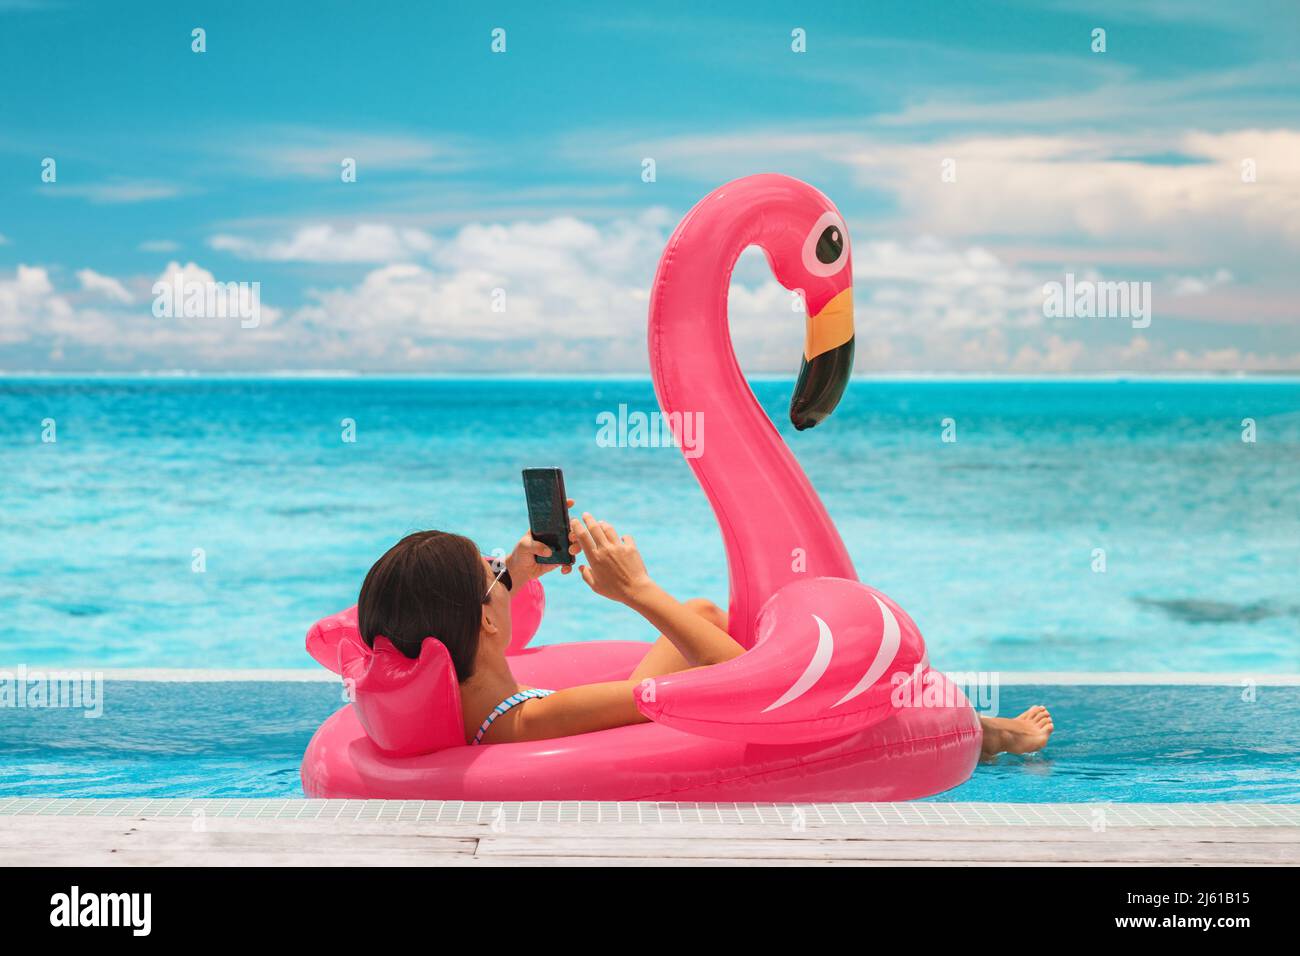 Vacaciones en verano piscina relajante mujer flotando en flotadores inflables flamencos usando el teléfono móvil en un resort de lujo para tomar el sol. Viajes al Caribe Foto de stock